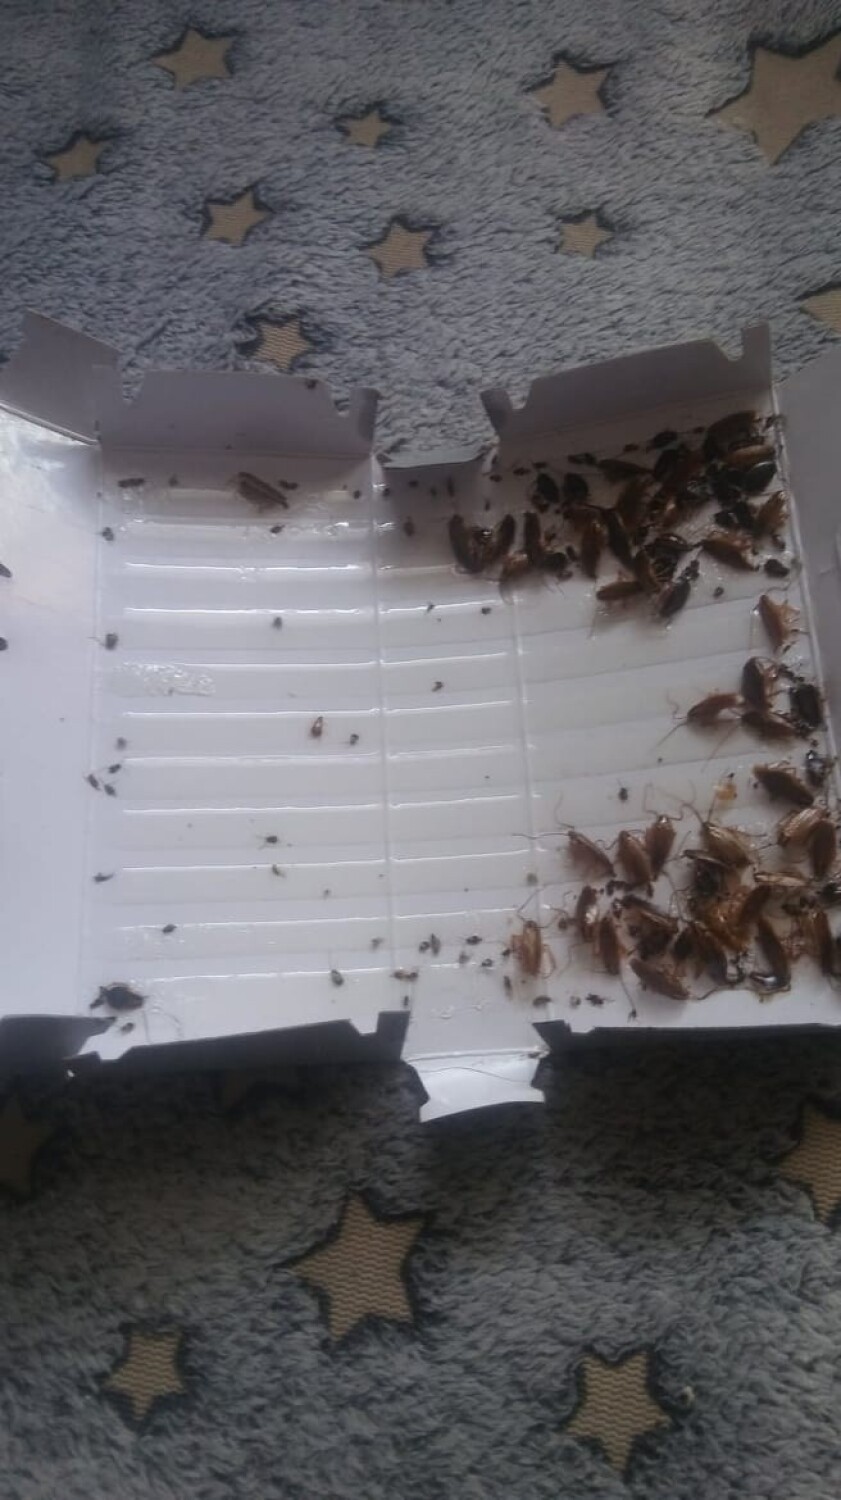 Mieszkanie w Kielcach, w którym miesiącami leżały zwłoki, nadal nieposprzątane! Bezradni ludzie robią zdjęcia karaluchów 